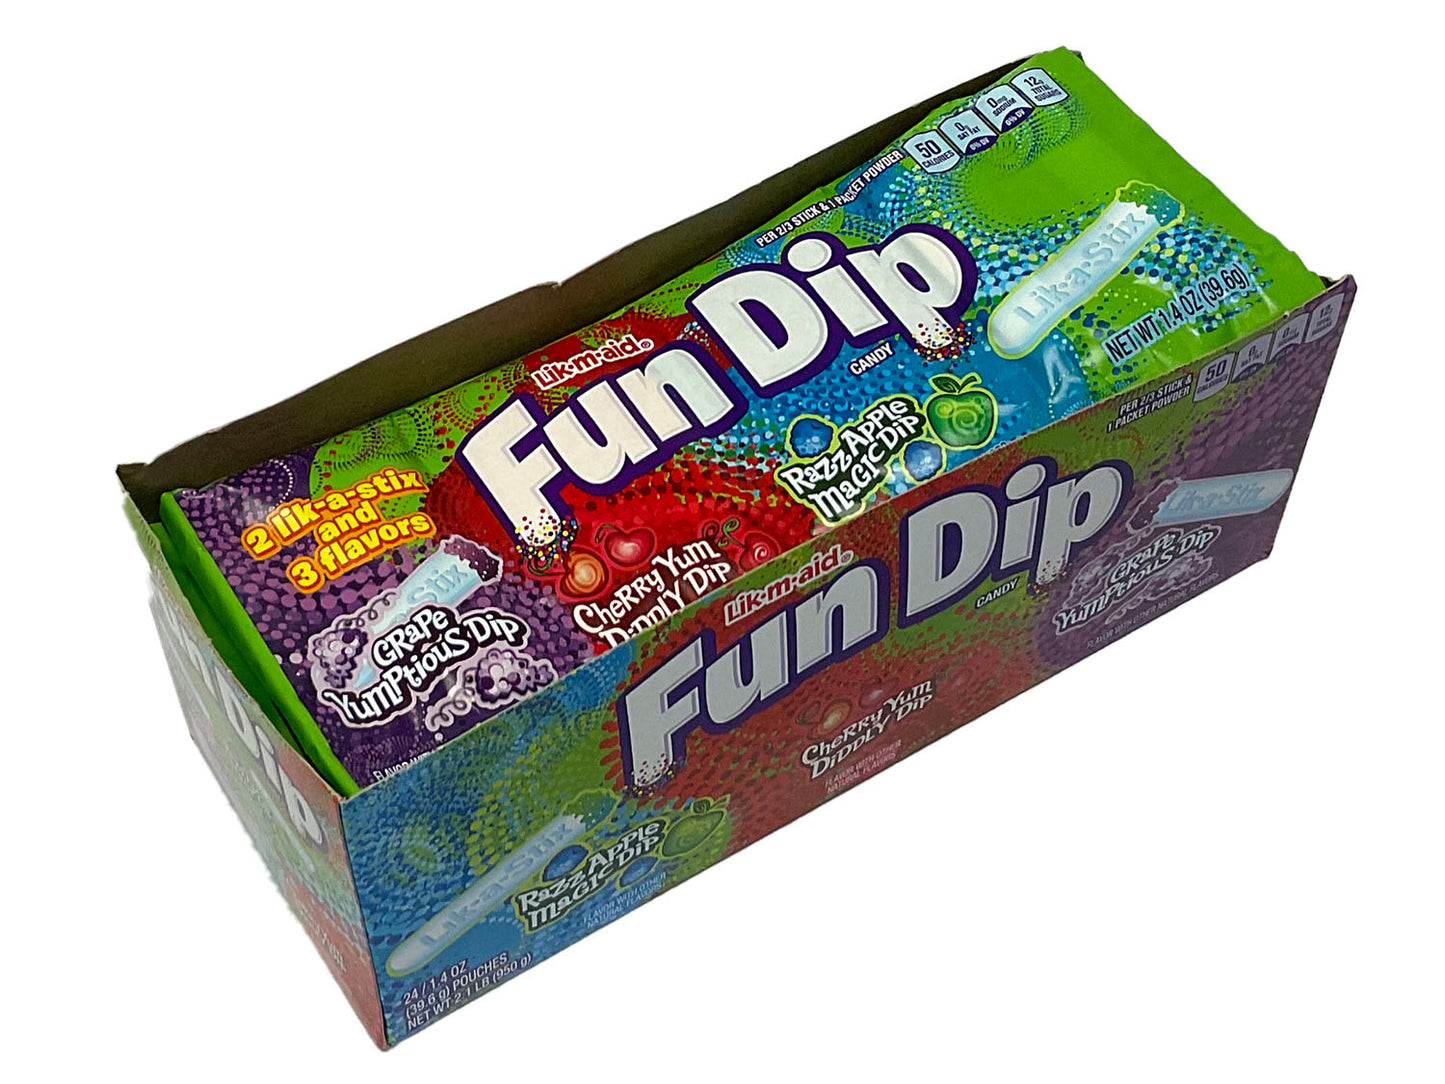 Lik-M-Aid Fun Dip - 1.4 oz pack - box of 24